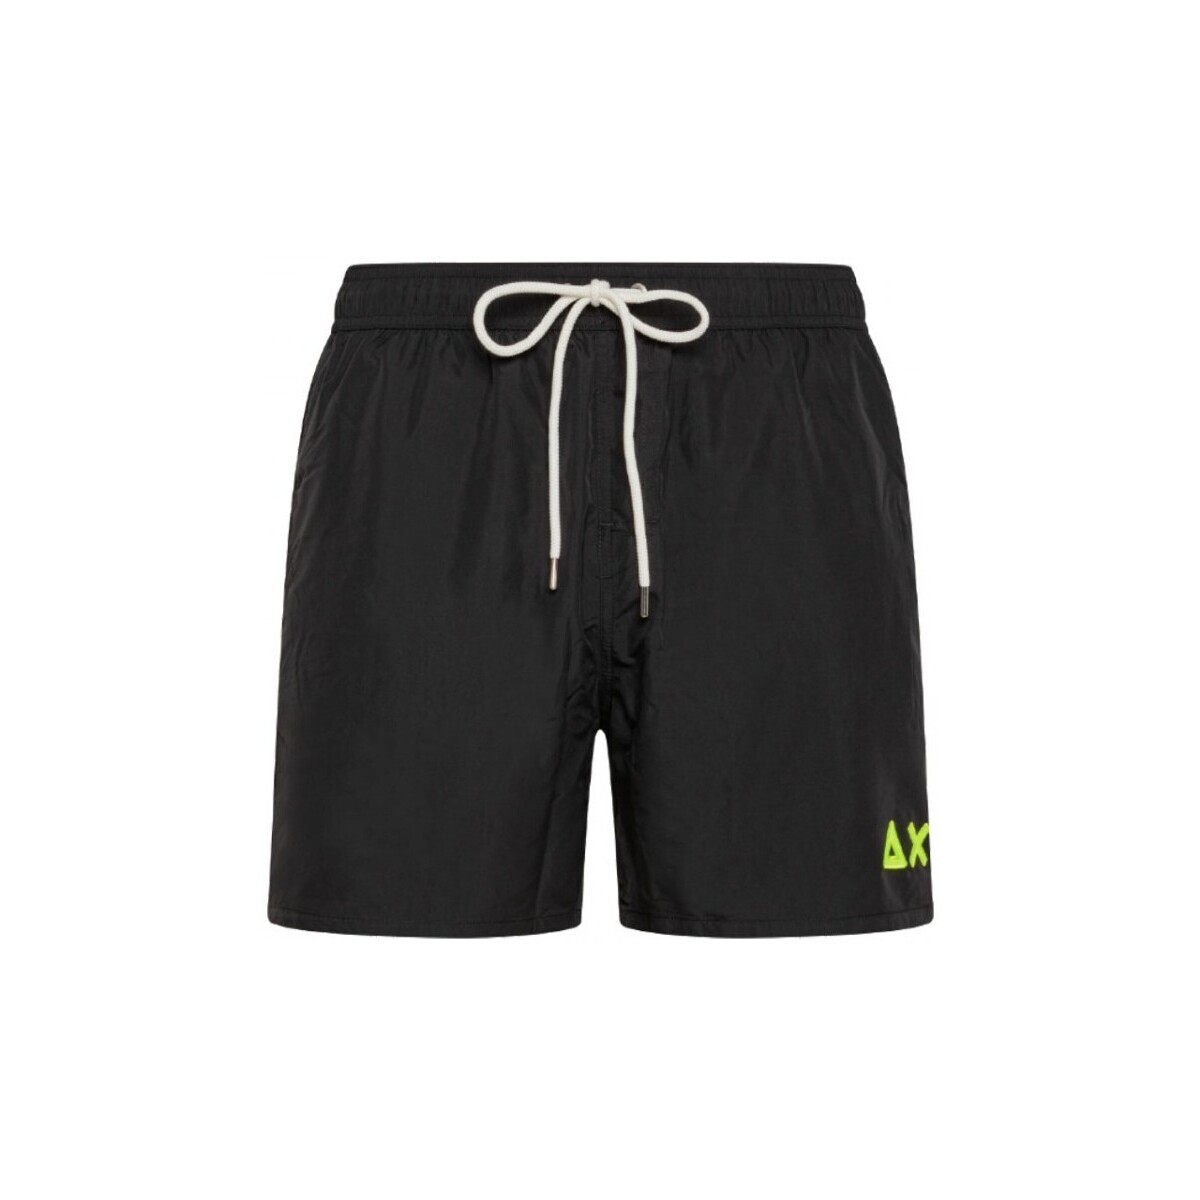 Vêtements Homme Maillots / Shorts de bain Sun68 Pantalon De Bain Avec Logo Fluo Noir